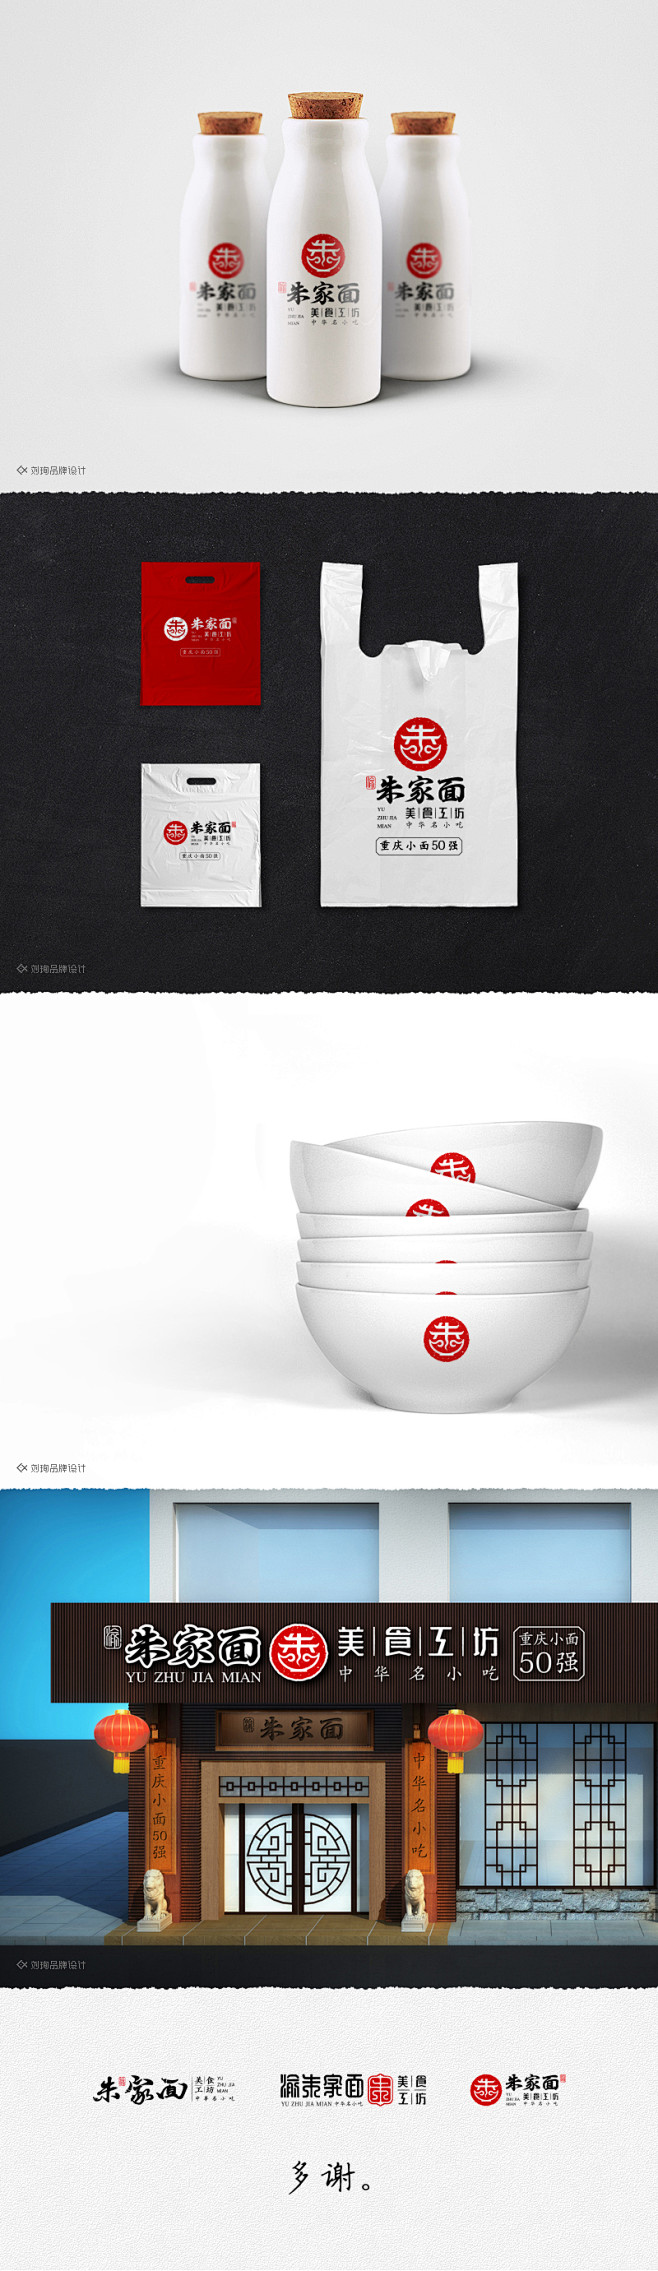 餐饮品牌标志设计分享 by Jonass...